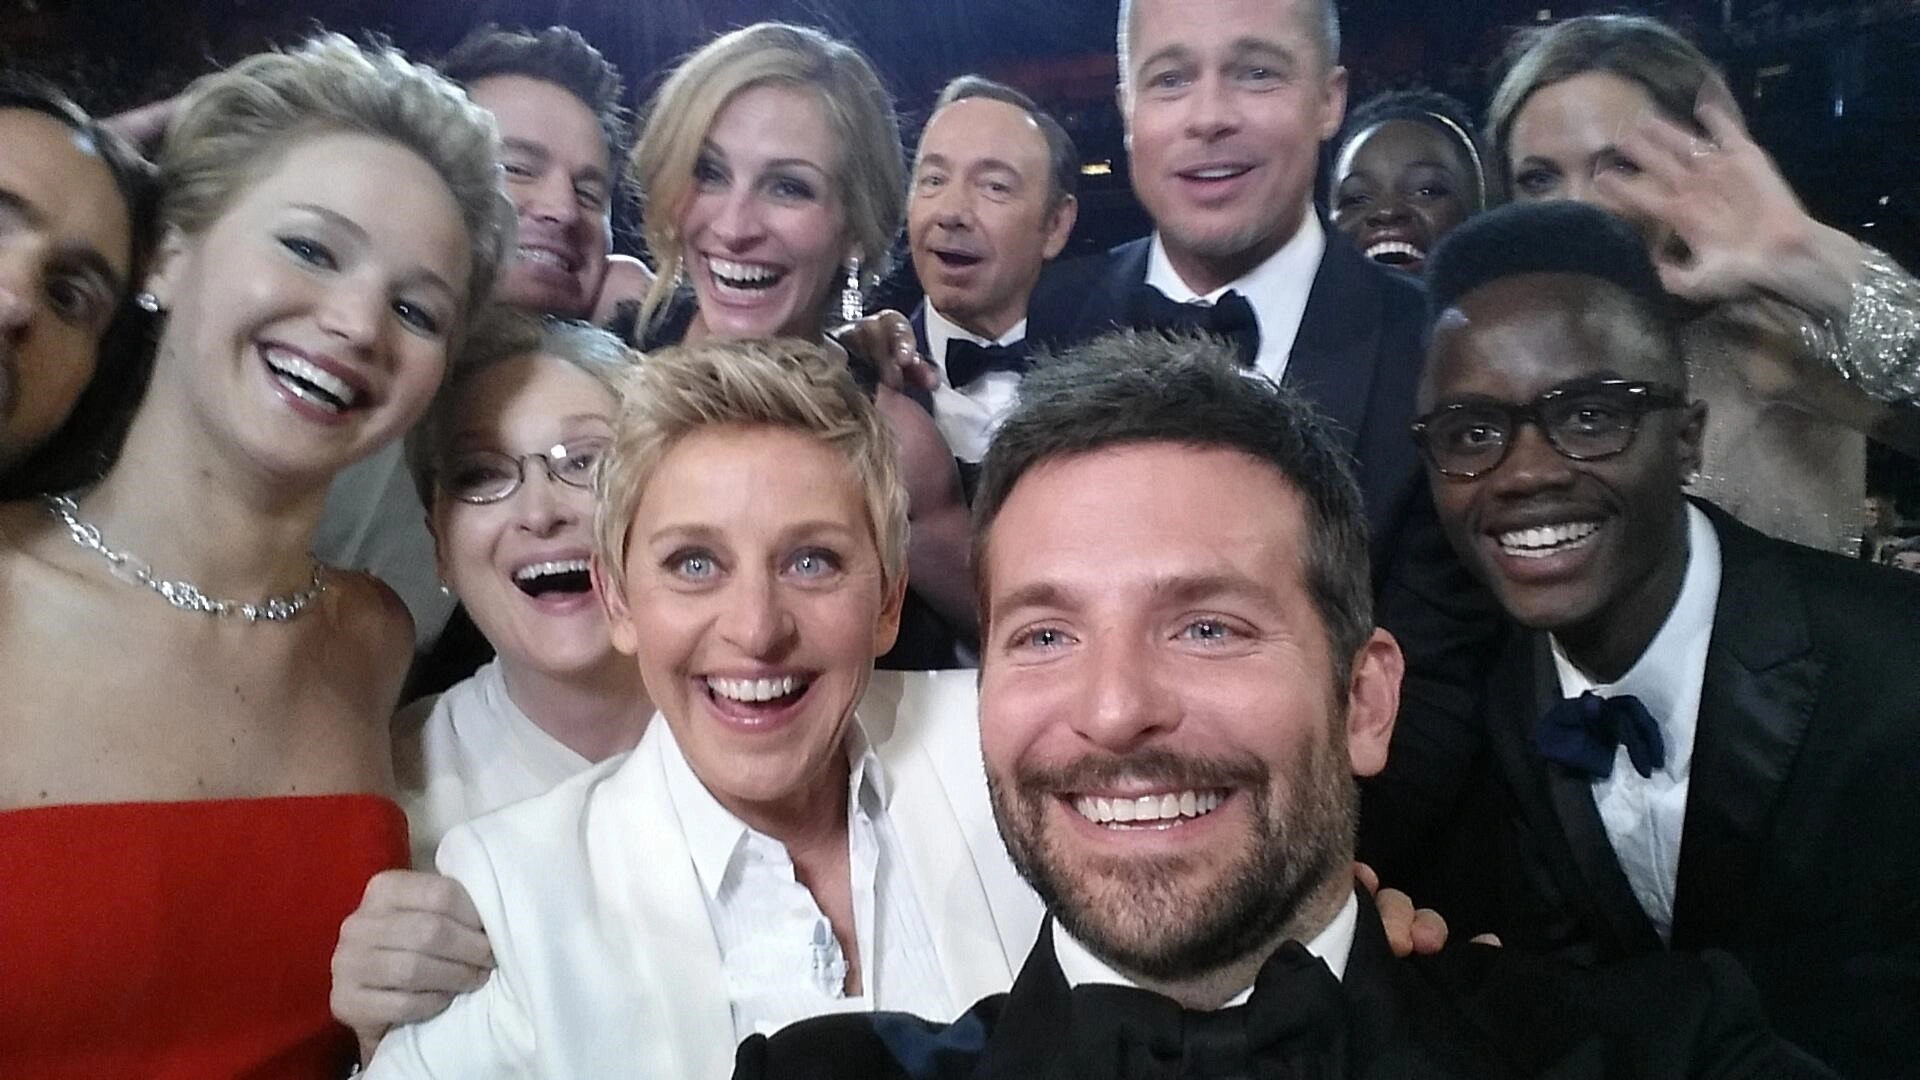 Hậu khoảnh khắc “selfie” nổi tiếng nhất lịch sử Oscar, cặp đôi Brad Pitt - Angelina Jolie và những nhân vật trong hình giờ ra sao? - Ảnh 2.